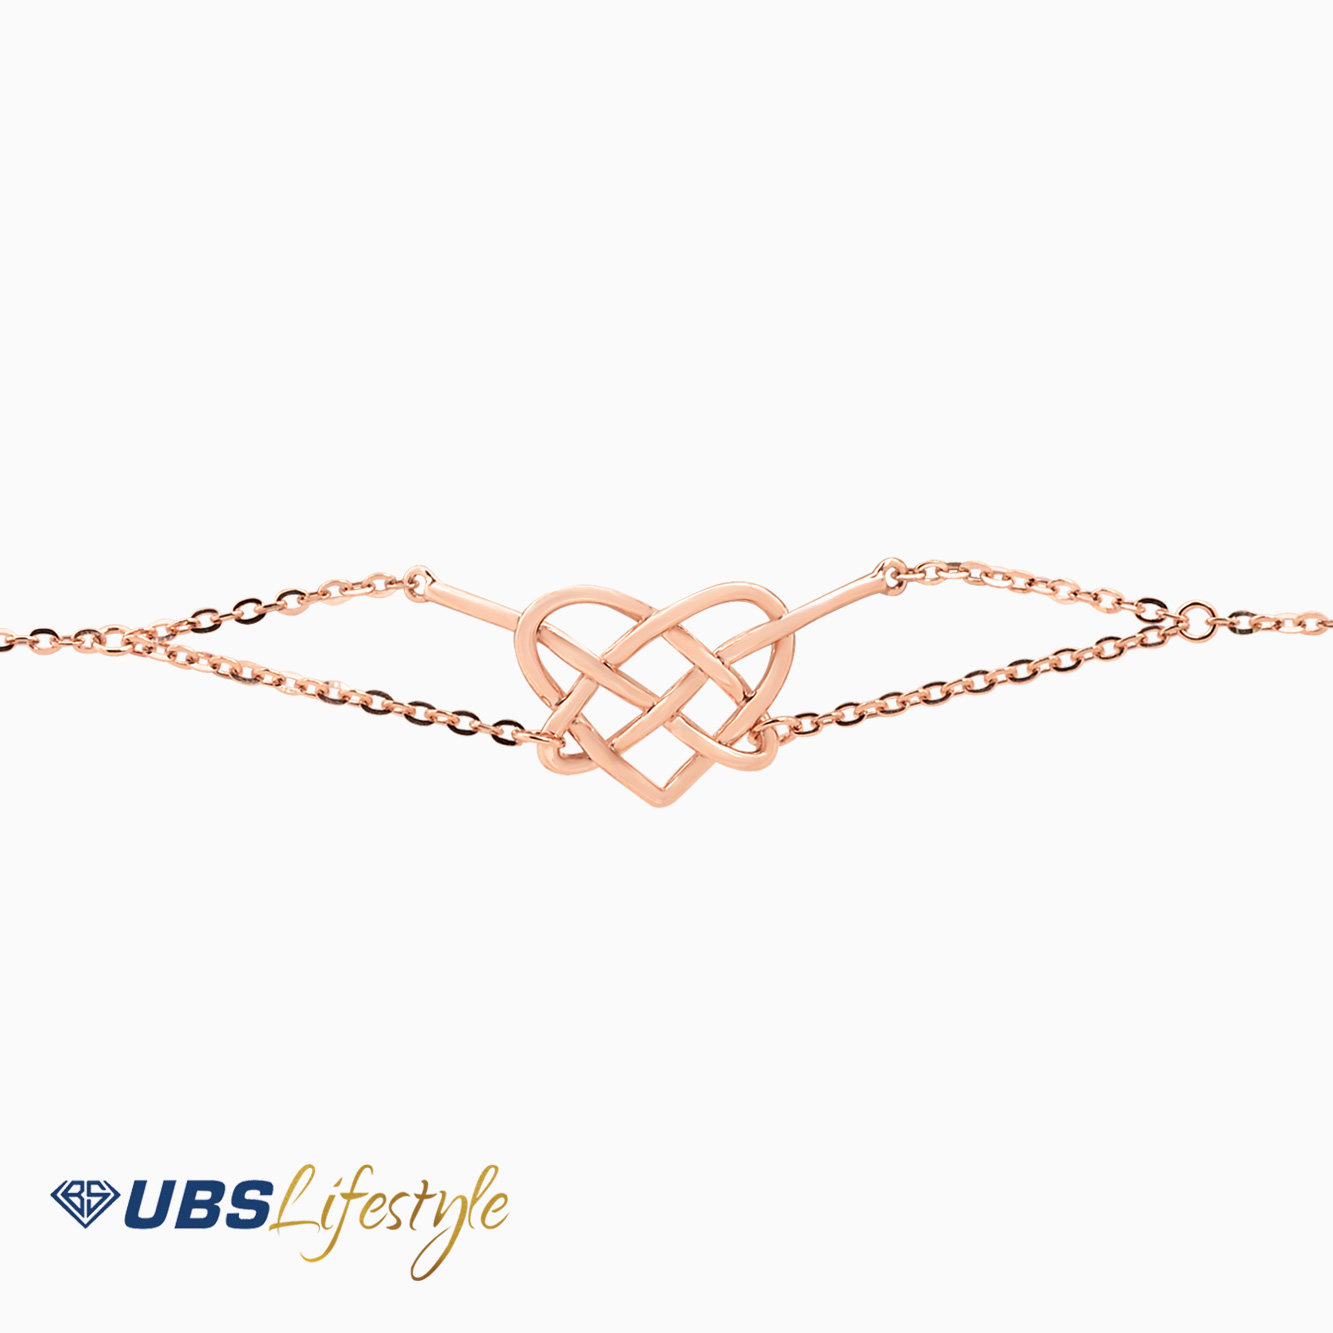 UBS Gelang Emas Ikatan Cinta - Kgv6399 - 8K